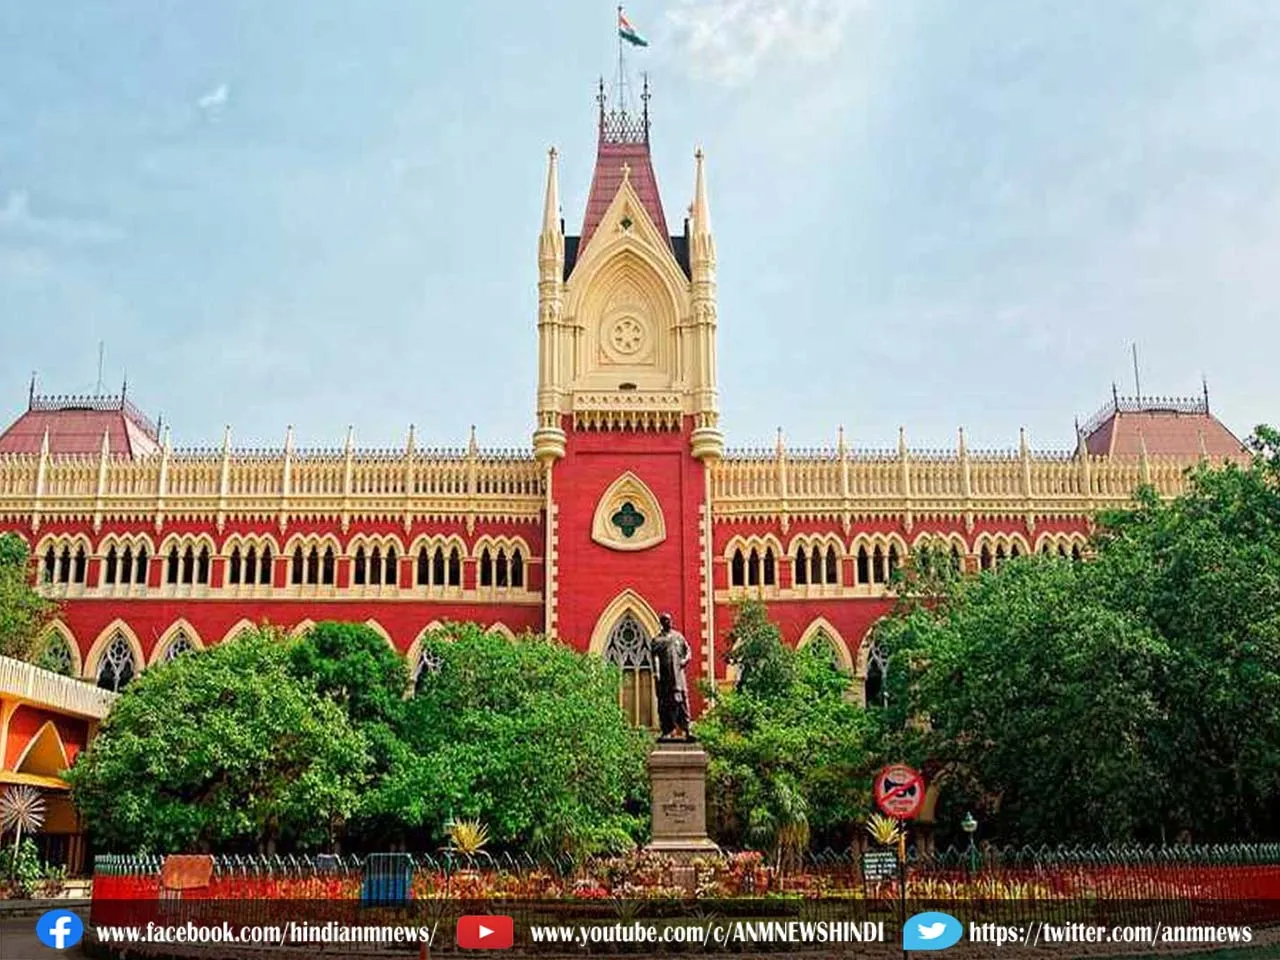 शांतिपूर्ण और निष्पक्ष तरीके से मतदान कराने के लिए हर संभव उपाय शुरू करना है : Kolkata High Court